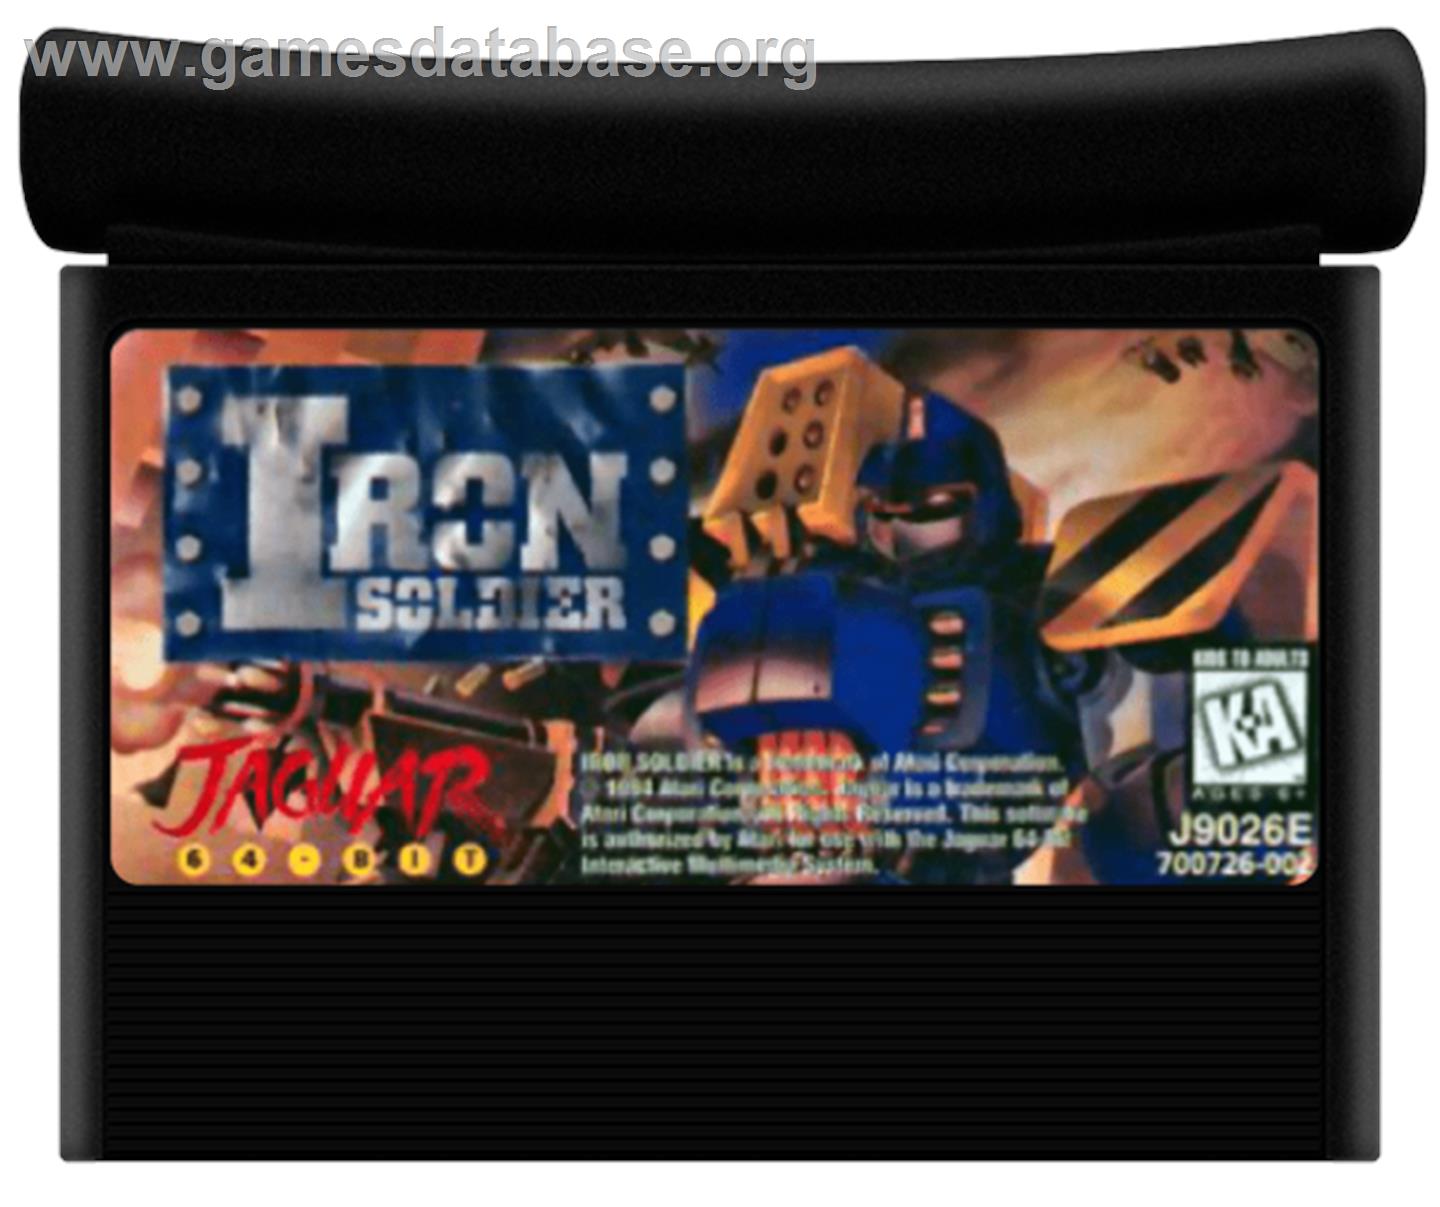 Iron Soldier - Atari Jaguar - Artwork - Cartridge